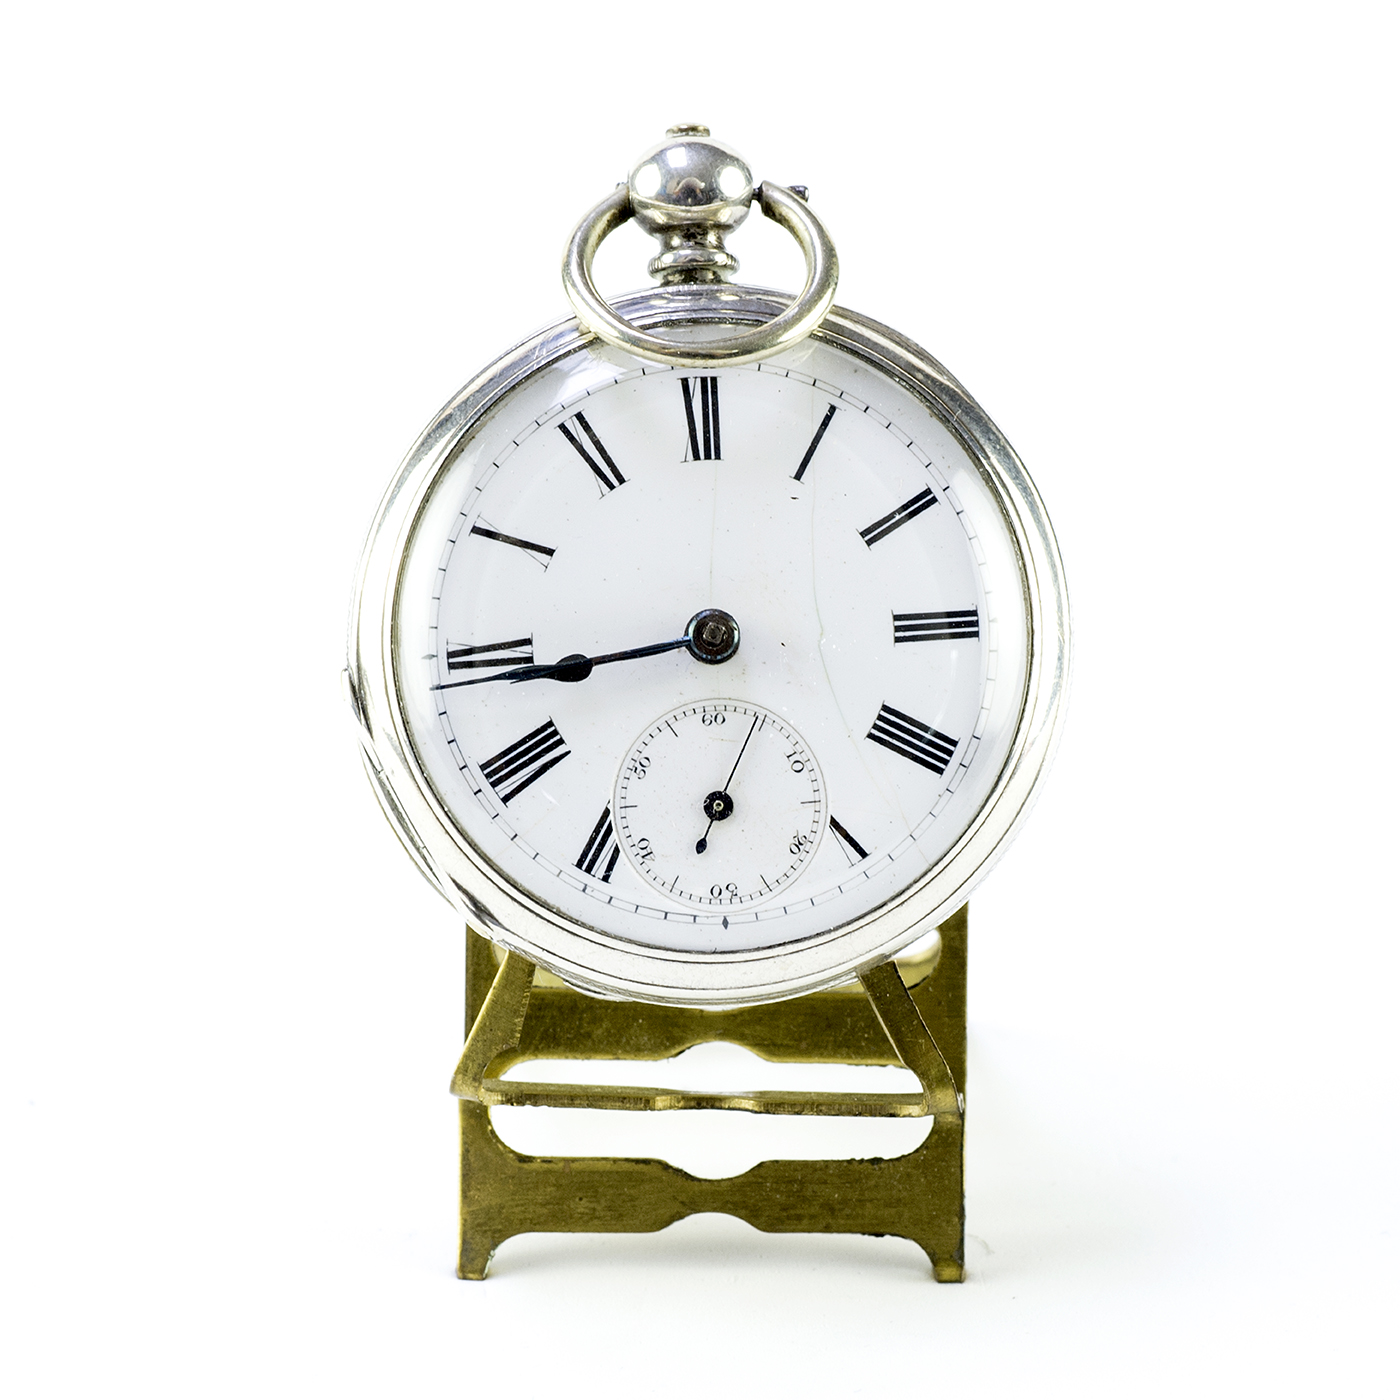 Reloj Inglés de bolsillo, lepine. Ca. 1880